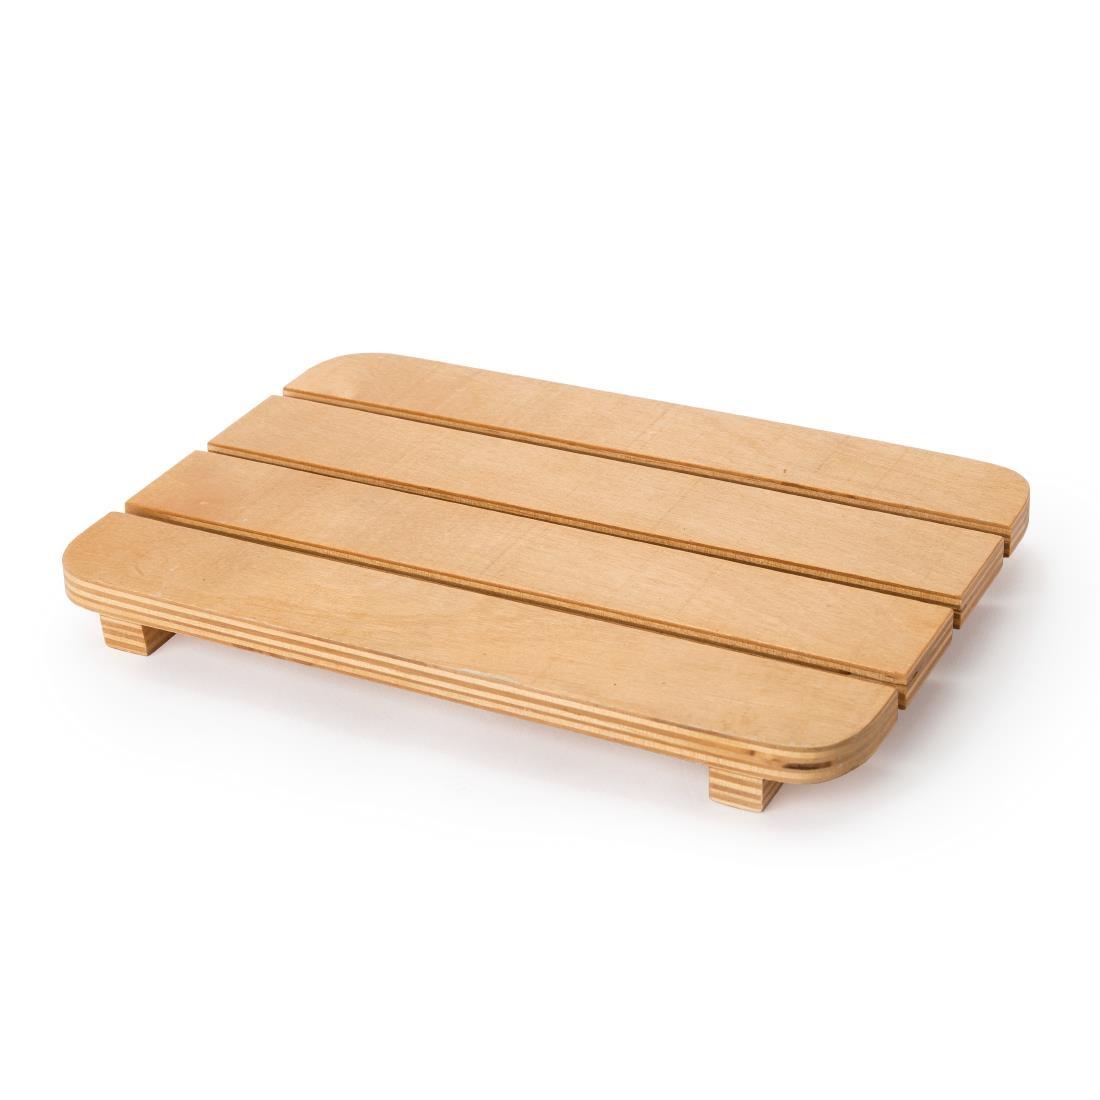 Bolero Wooden Slatted Amenities Tray 180mm (Single) - GR388  - 2